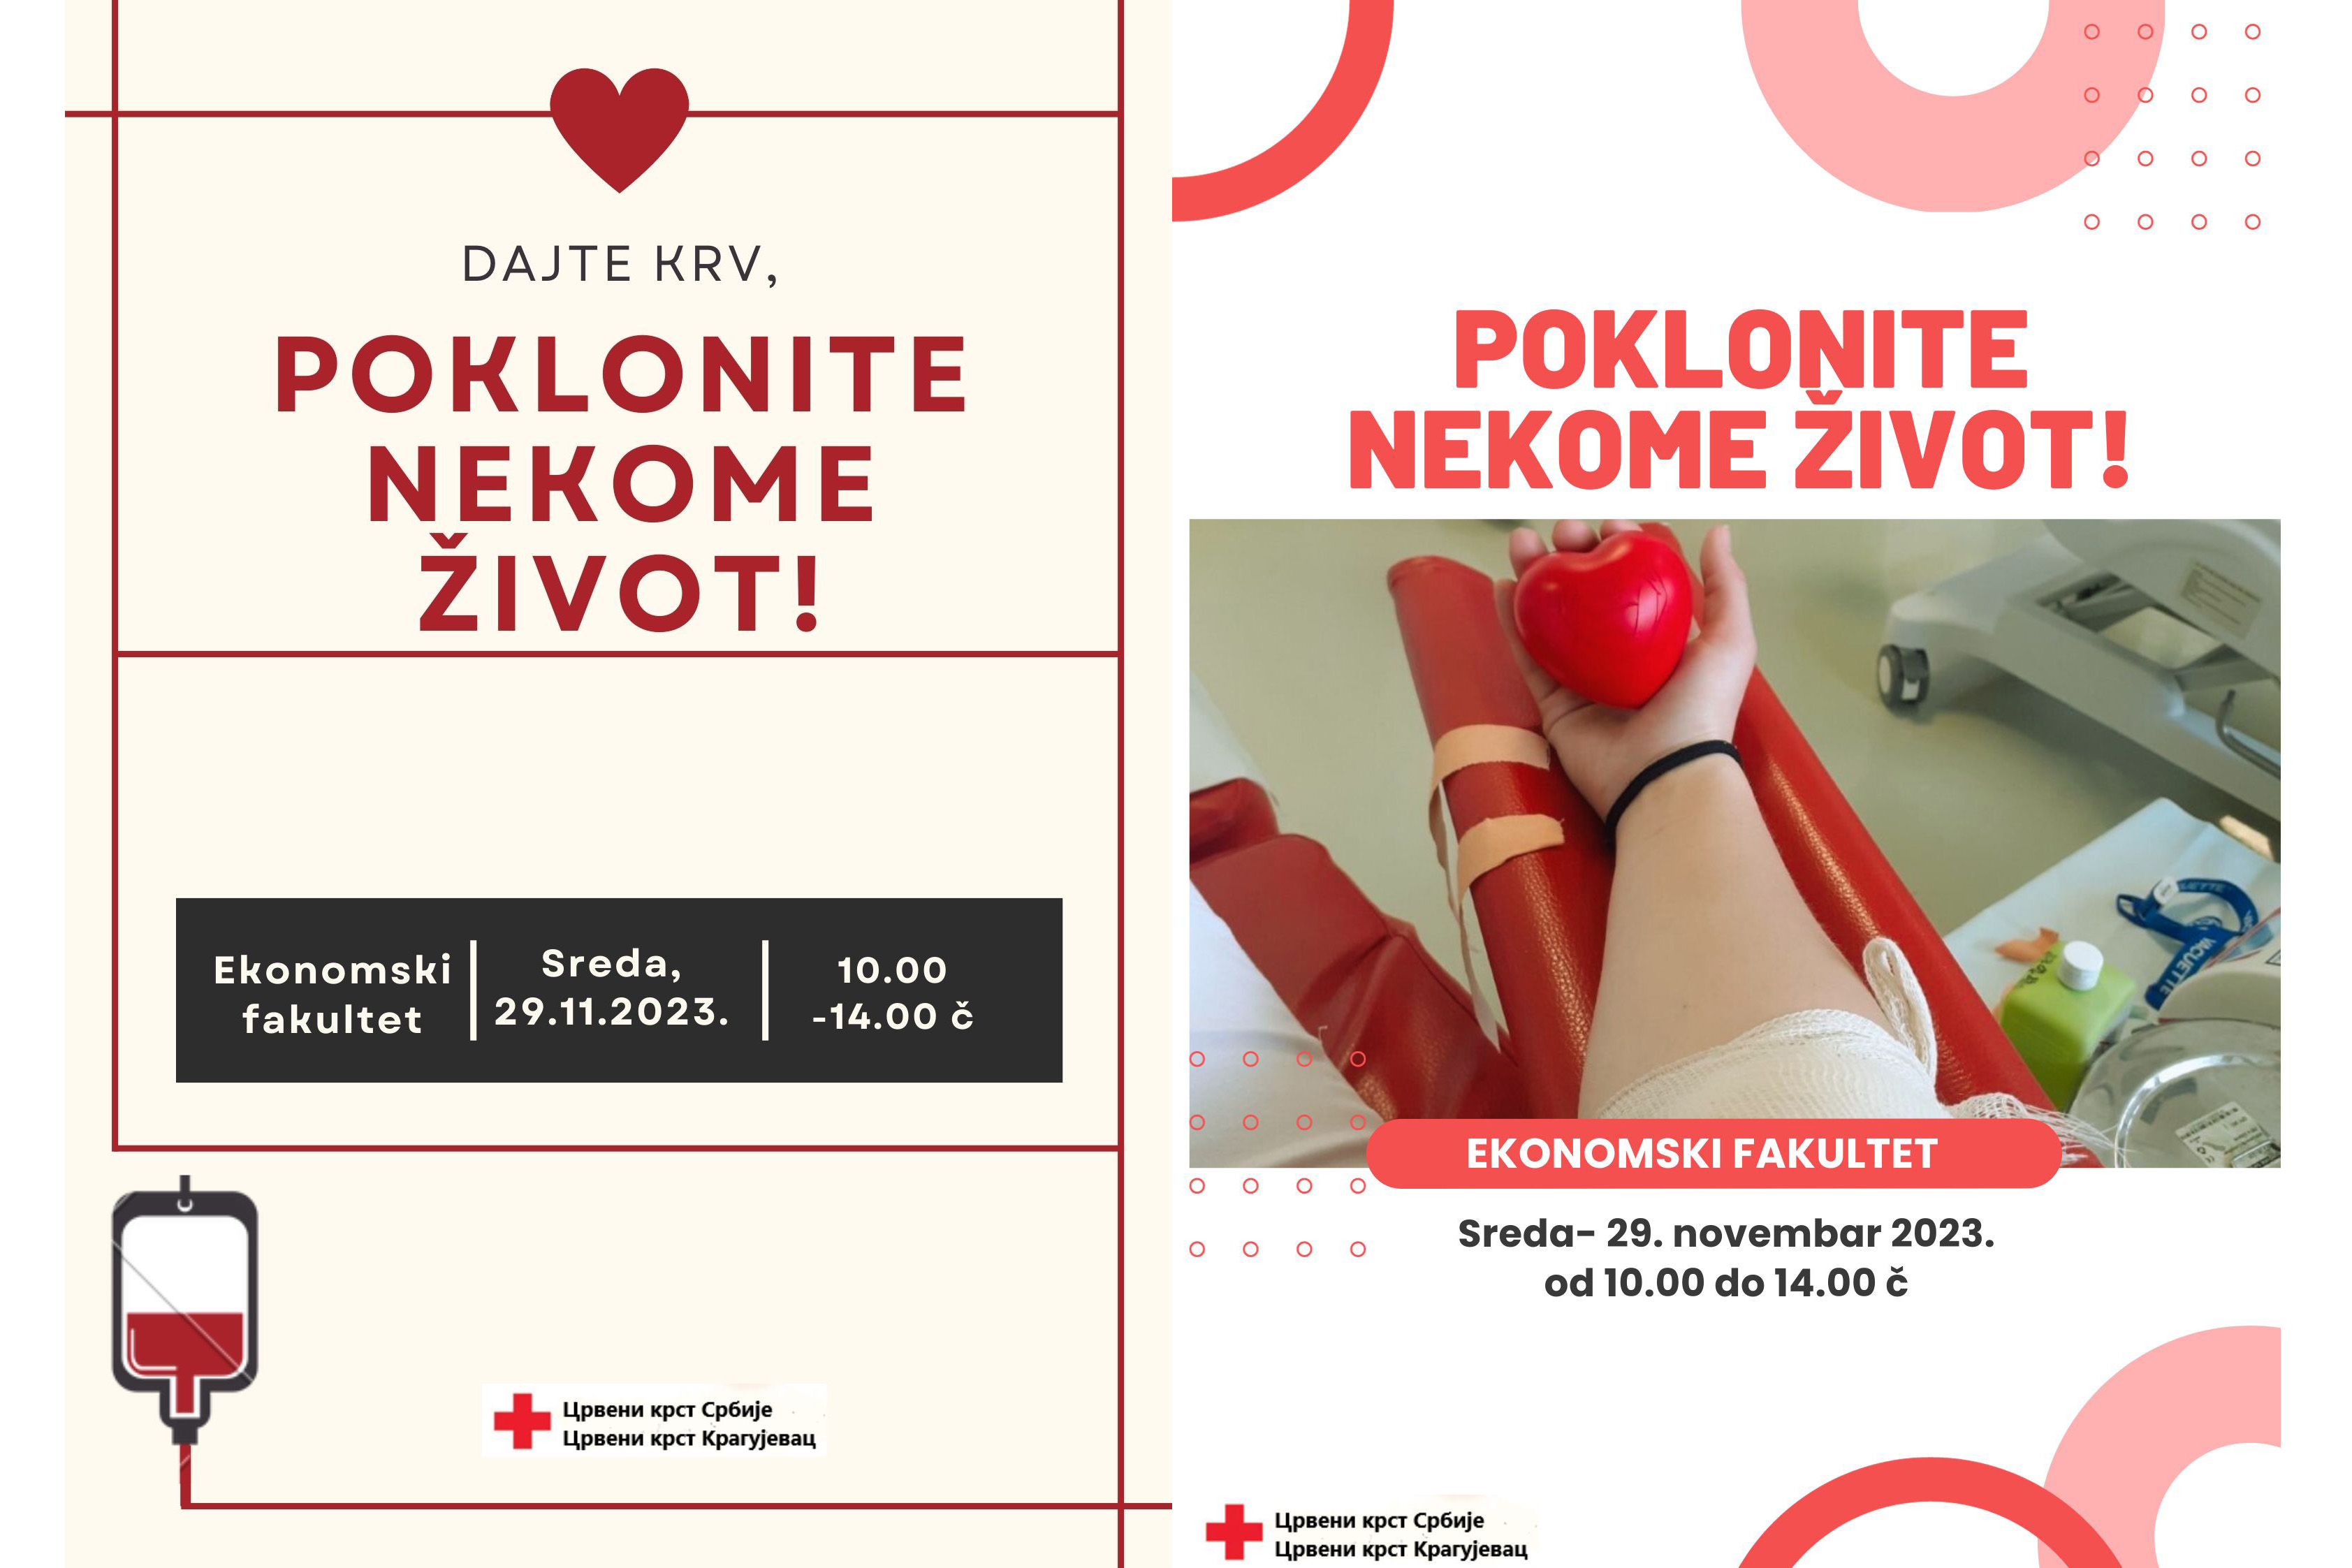 Акција добровољног давања крви 29. новембра 2023.